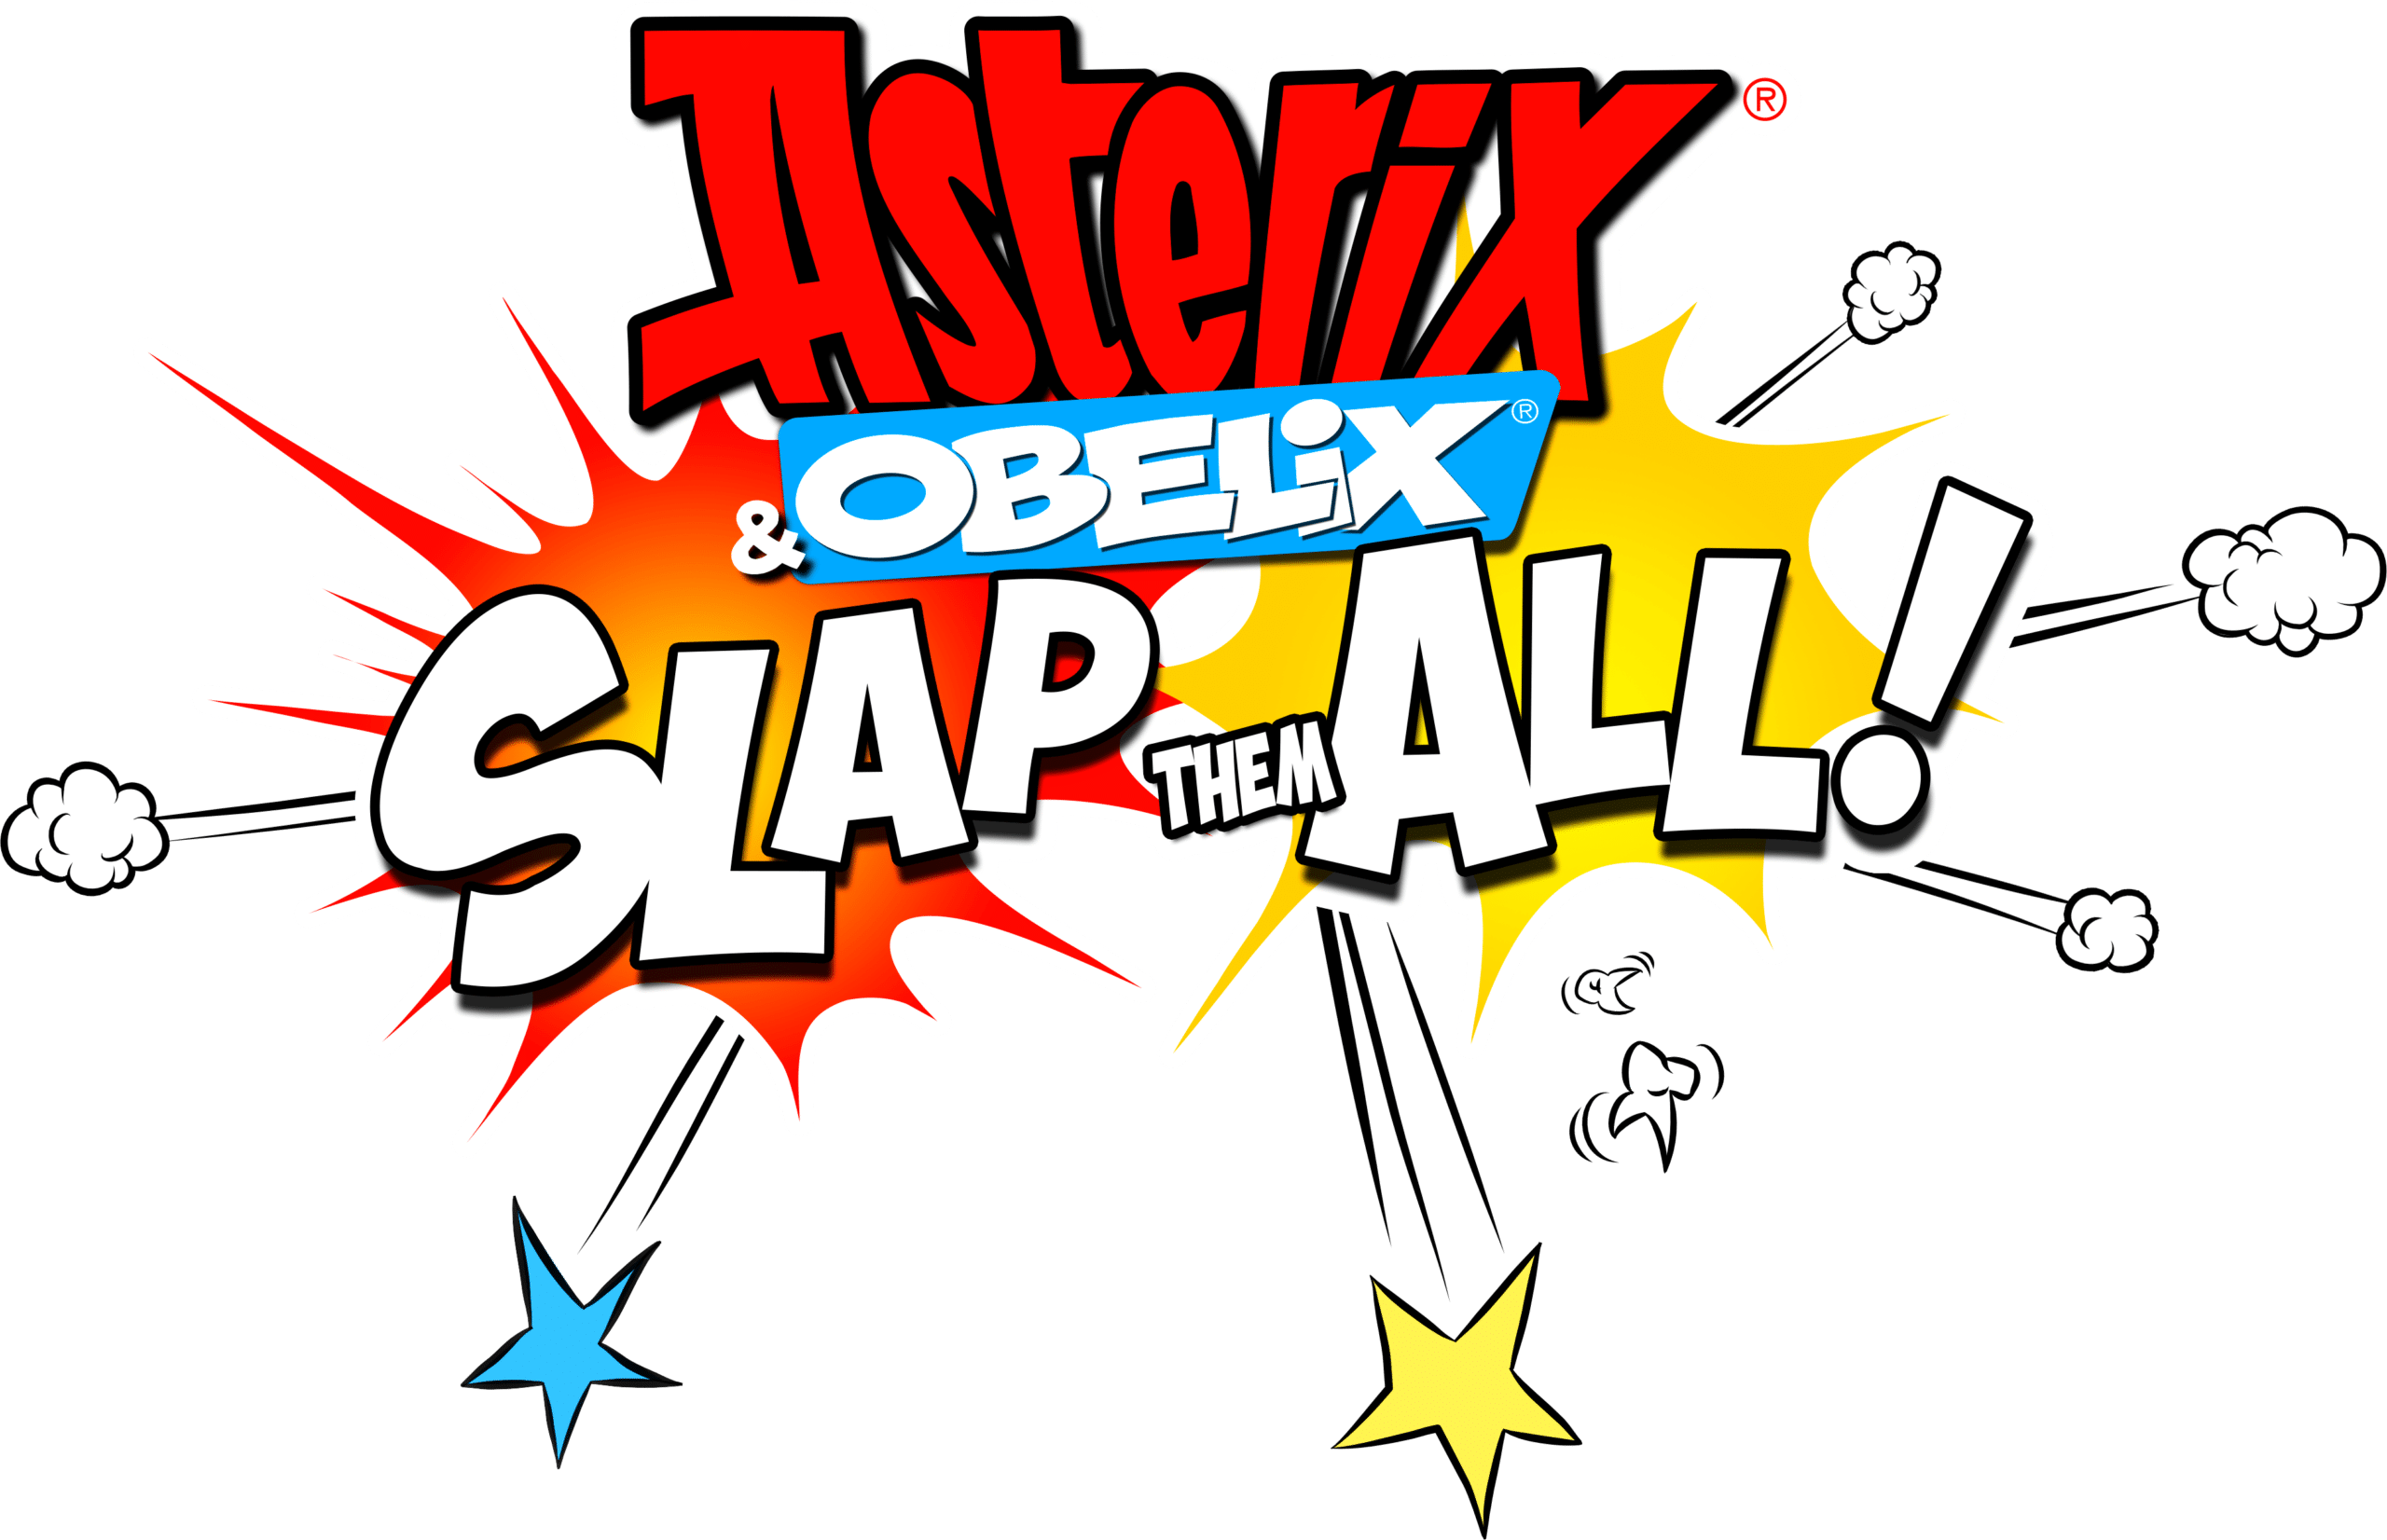 Ecco il trailer di lancio del nuovo Asterix & Obelix: Slap Them All! thumbnail